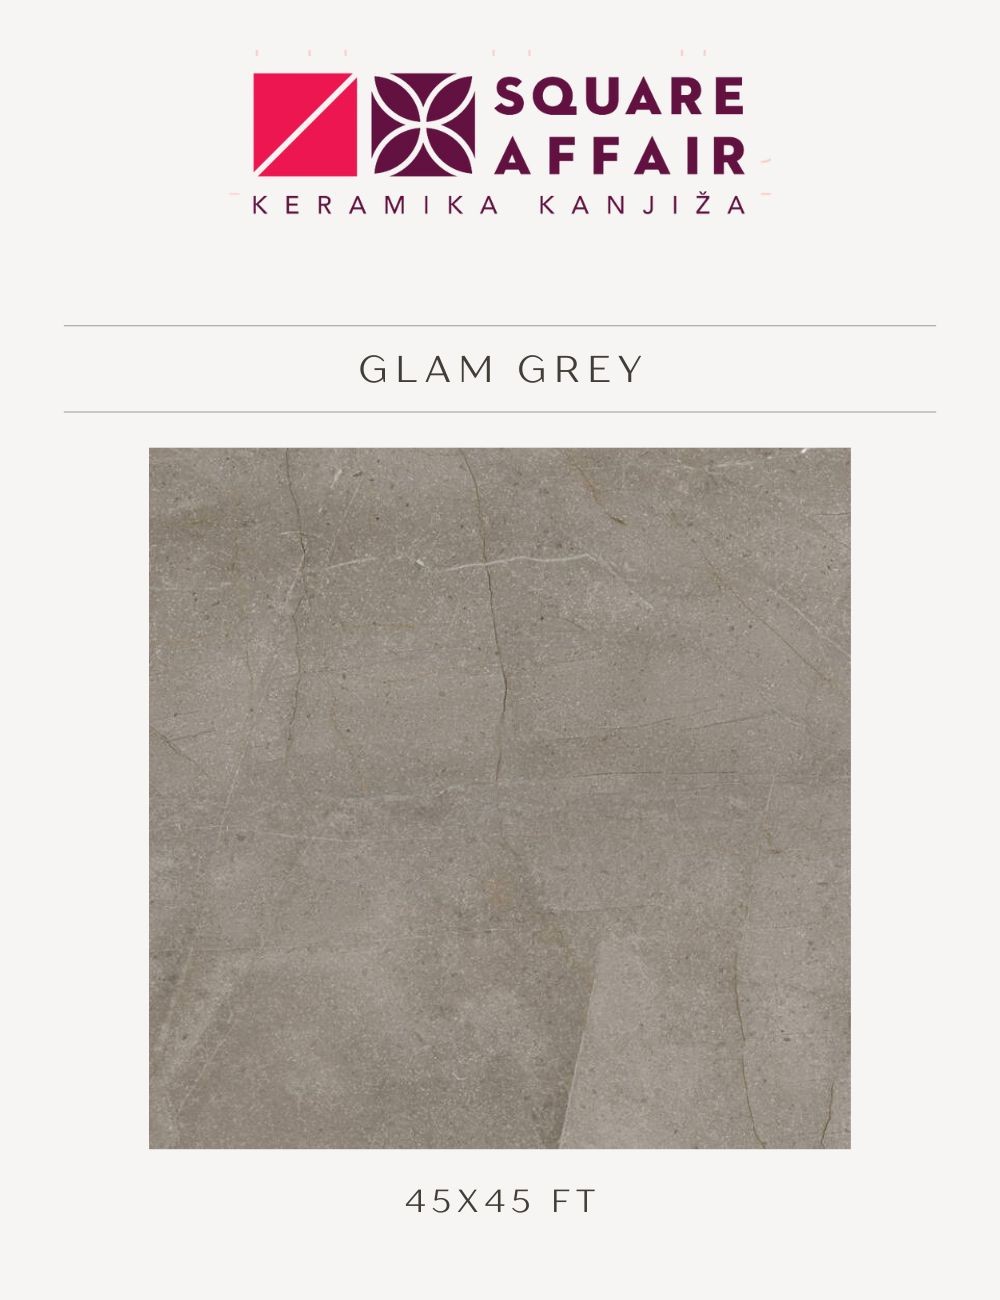 Podne pločice 45x45 Keramika Kanjiža - Glam Grey